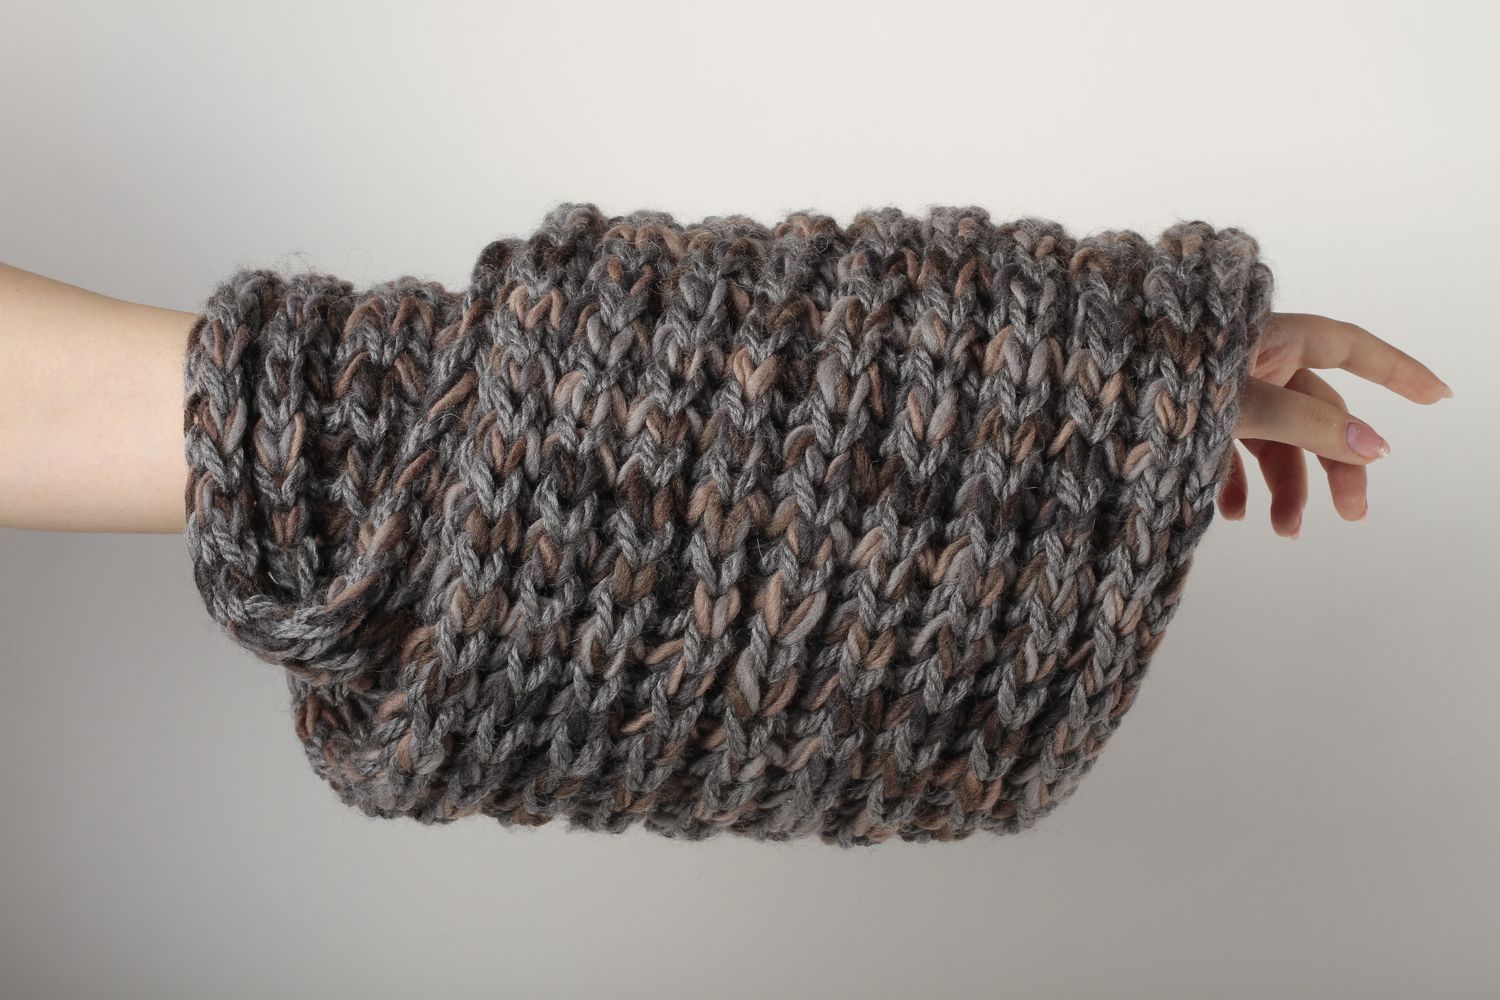 Écharpe laine faite main Vêtement femme tricot gris-marron Idée cadeau photo 1